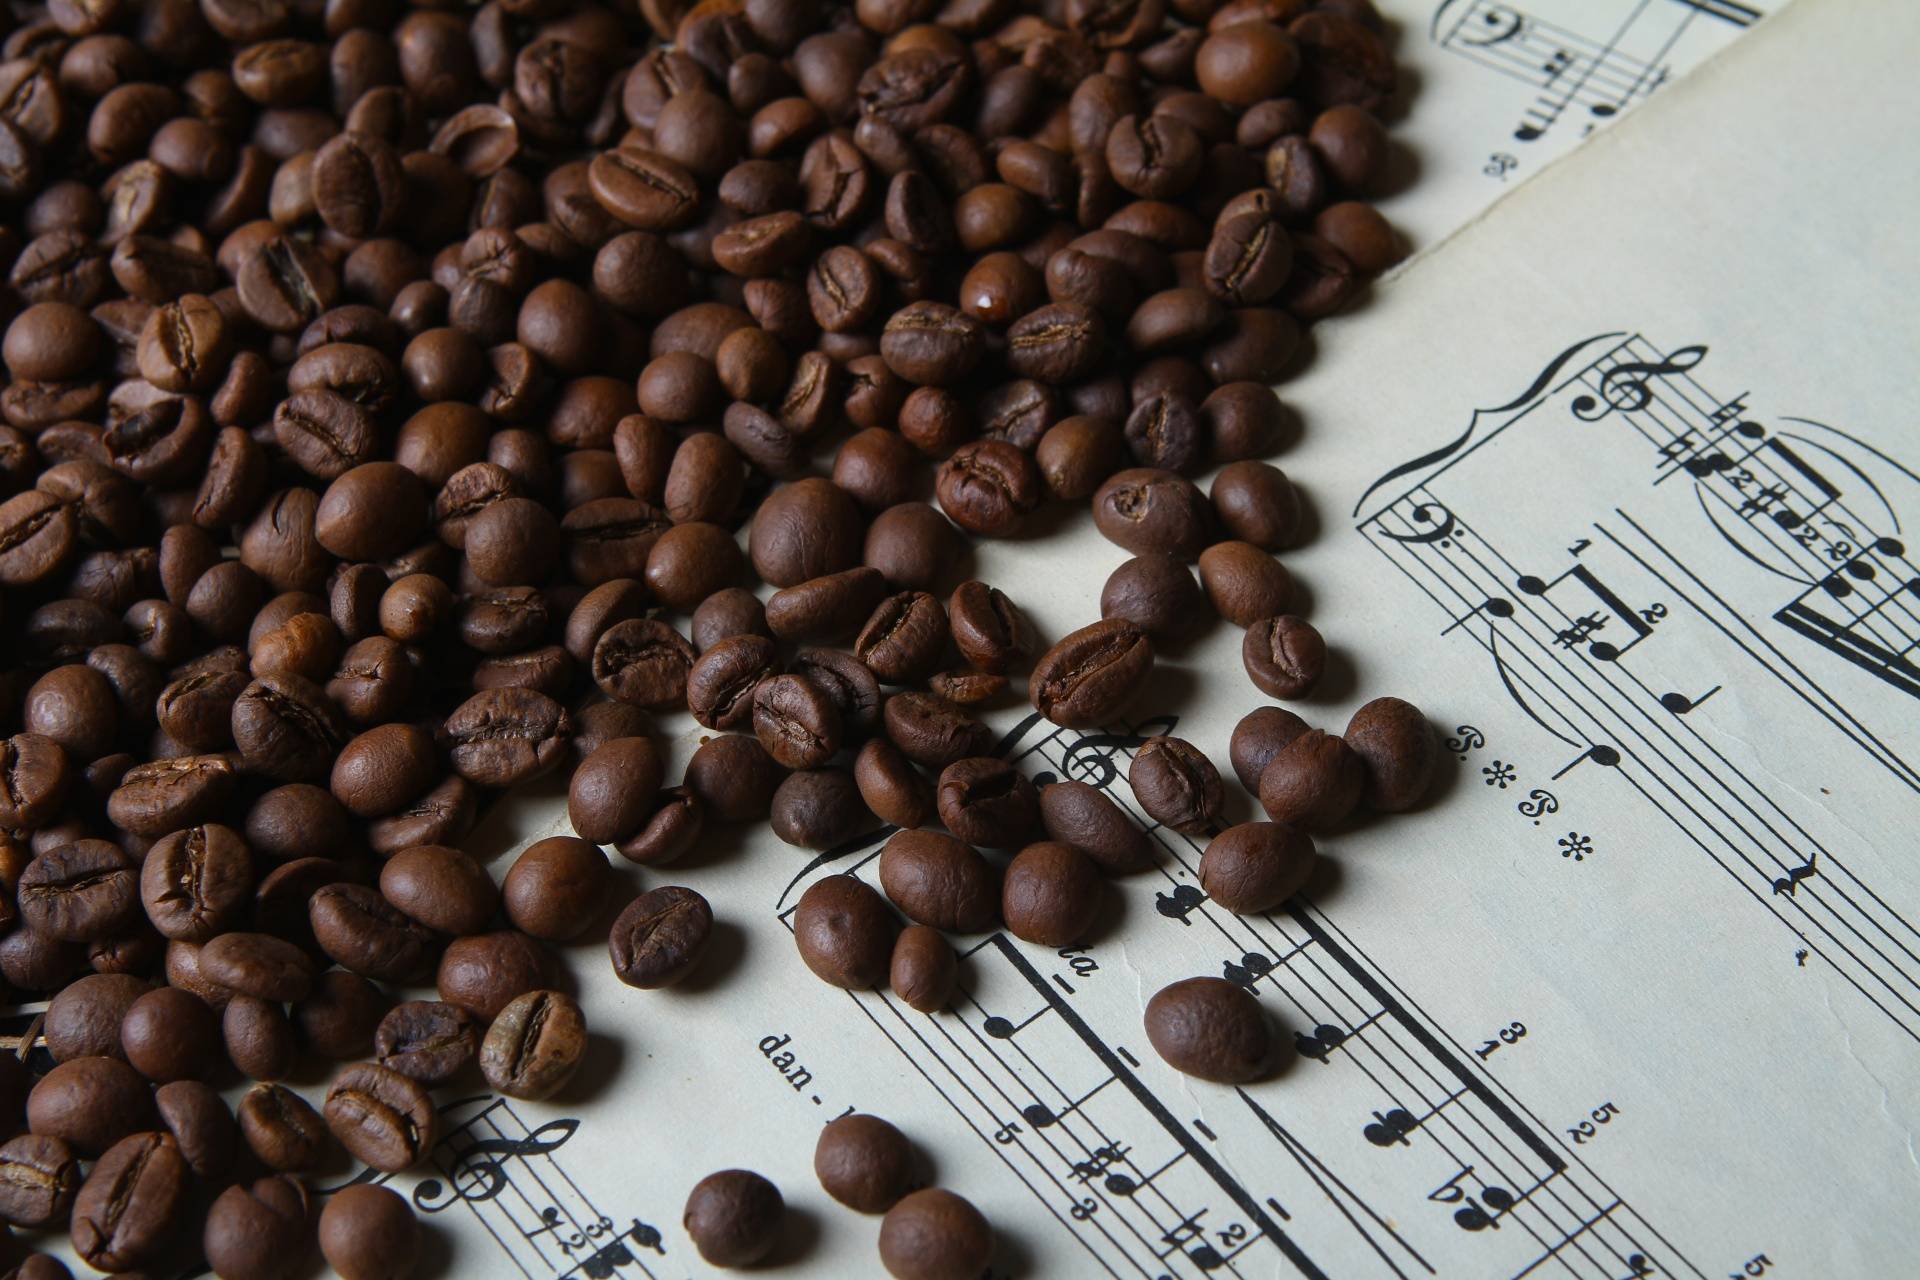 Производство кофе в доминикане - zefirka